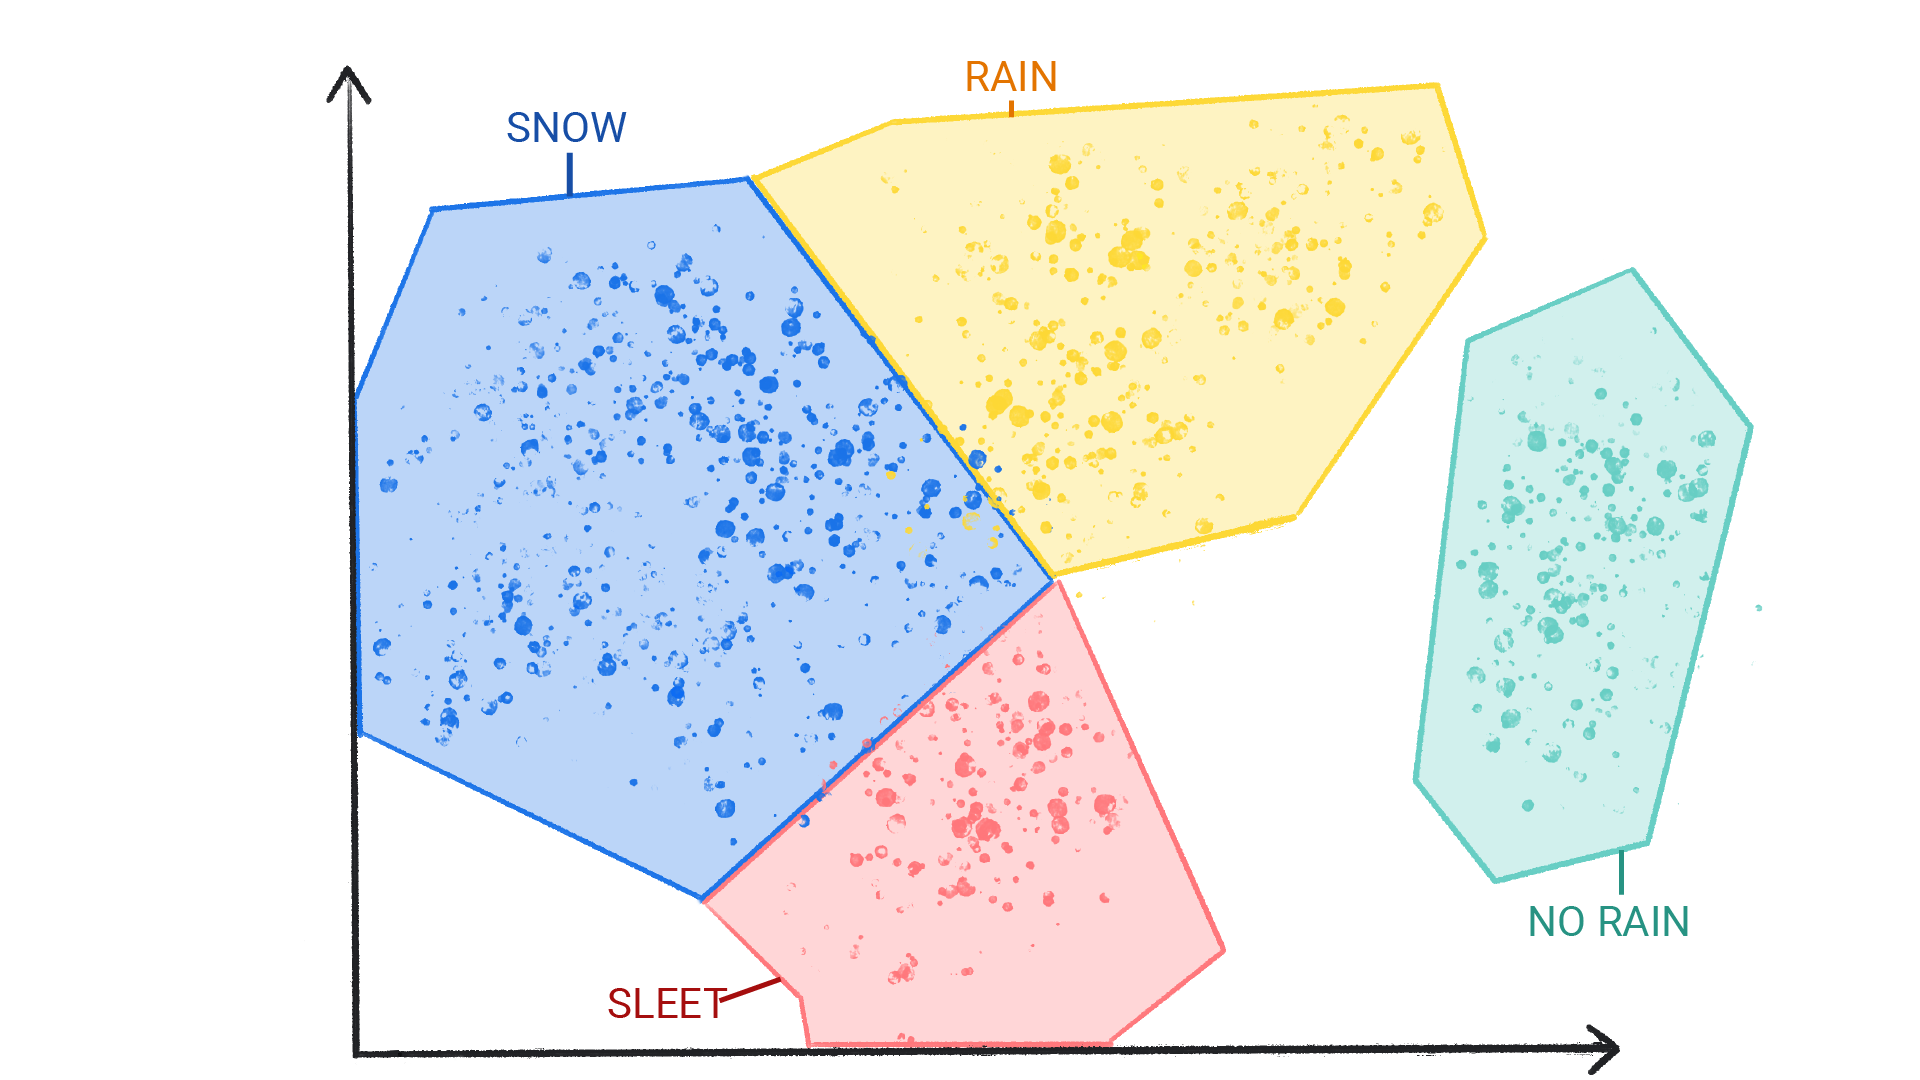 รูปภาพแสดงจุดสีในกลุ่มต่างๆ ที่มีป้ายกำกับว่าหิมะ ฝน ลูกเห็บ และฝนที่ตกลงมาล้อมเป็นรูปร่างและมีเส้นขอบซึ่งกันและกัน